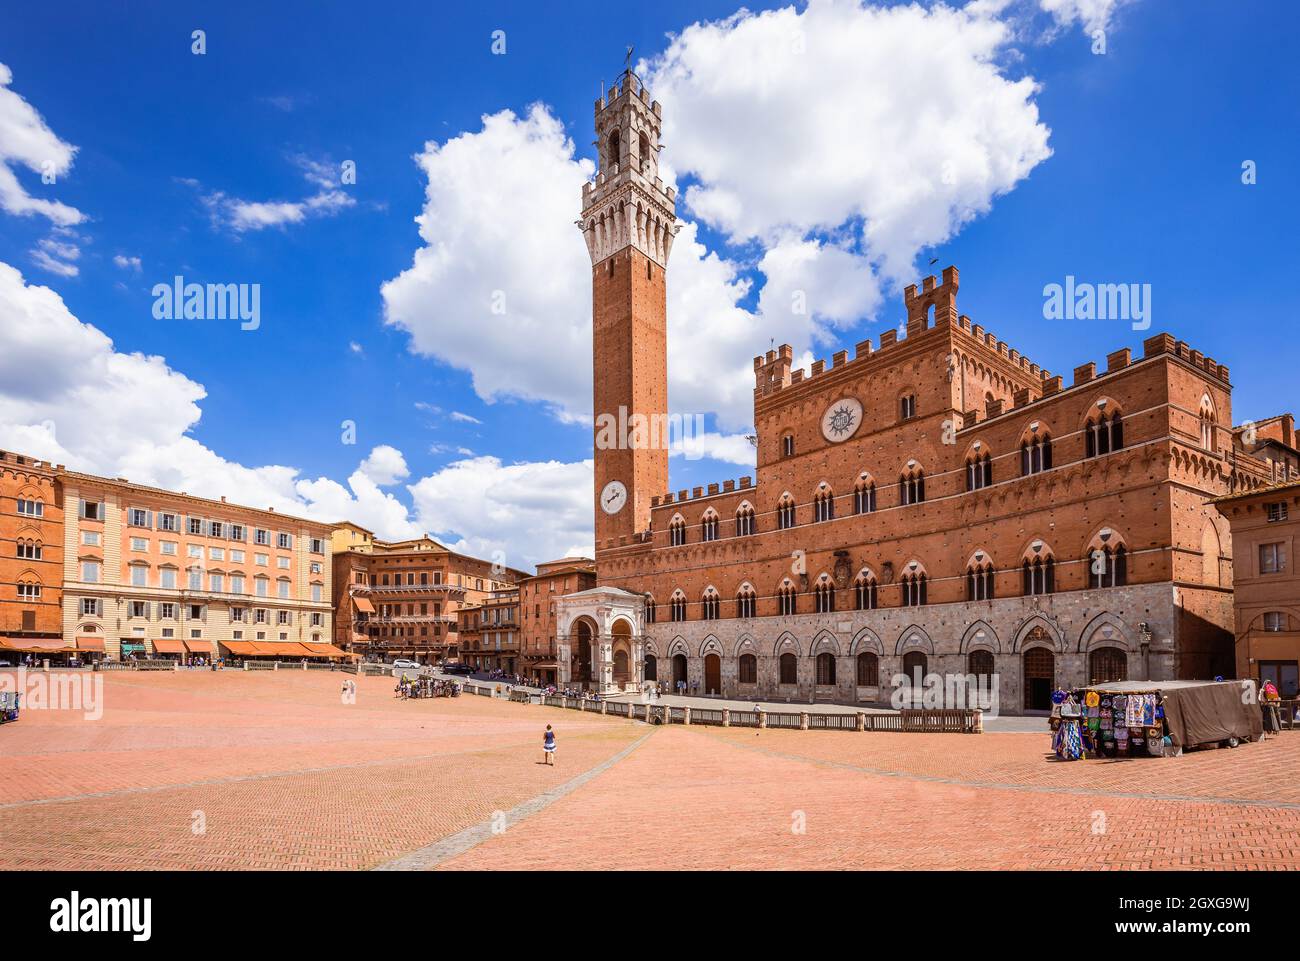 Siena, Italia. Piazza del campo con Palazzo pubblico e Torre del Mangia. Foto Stock